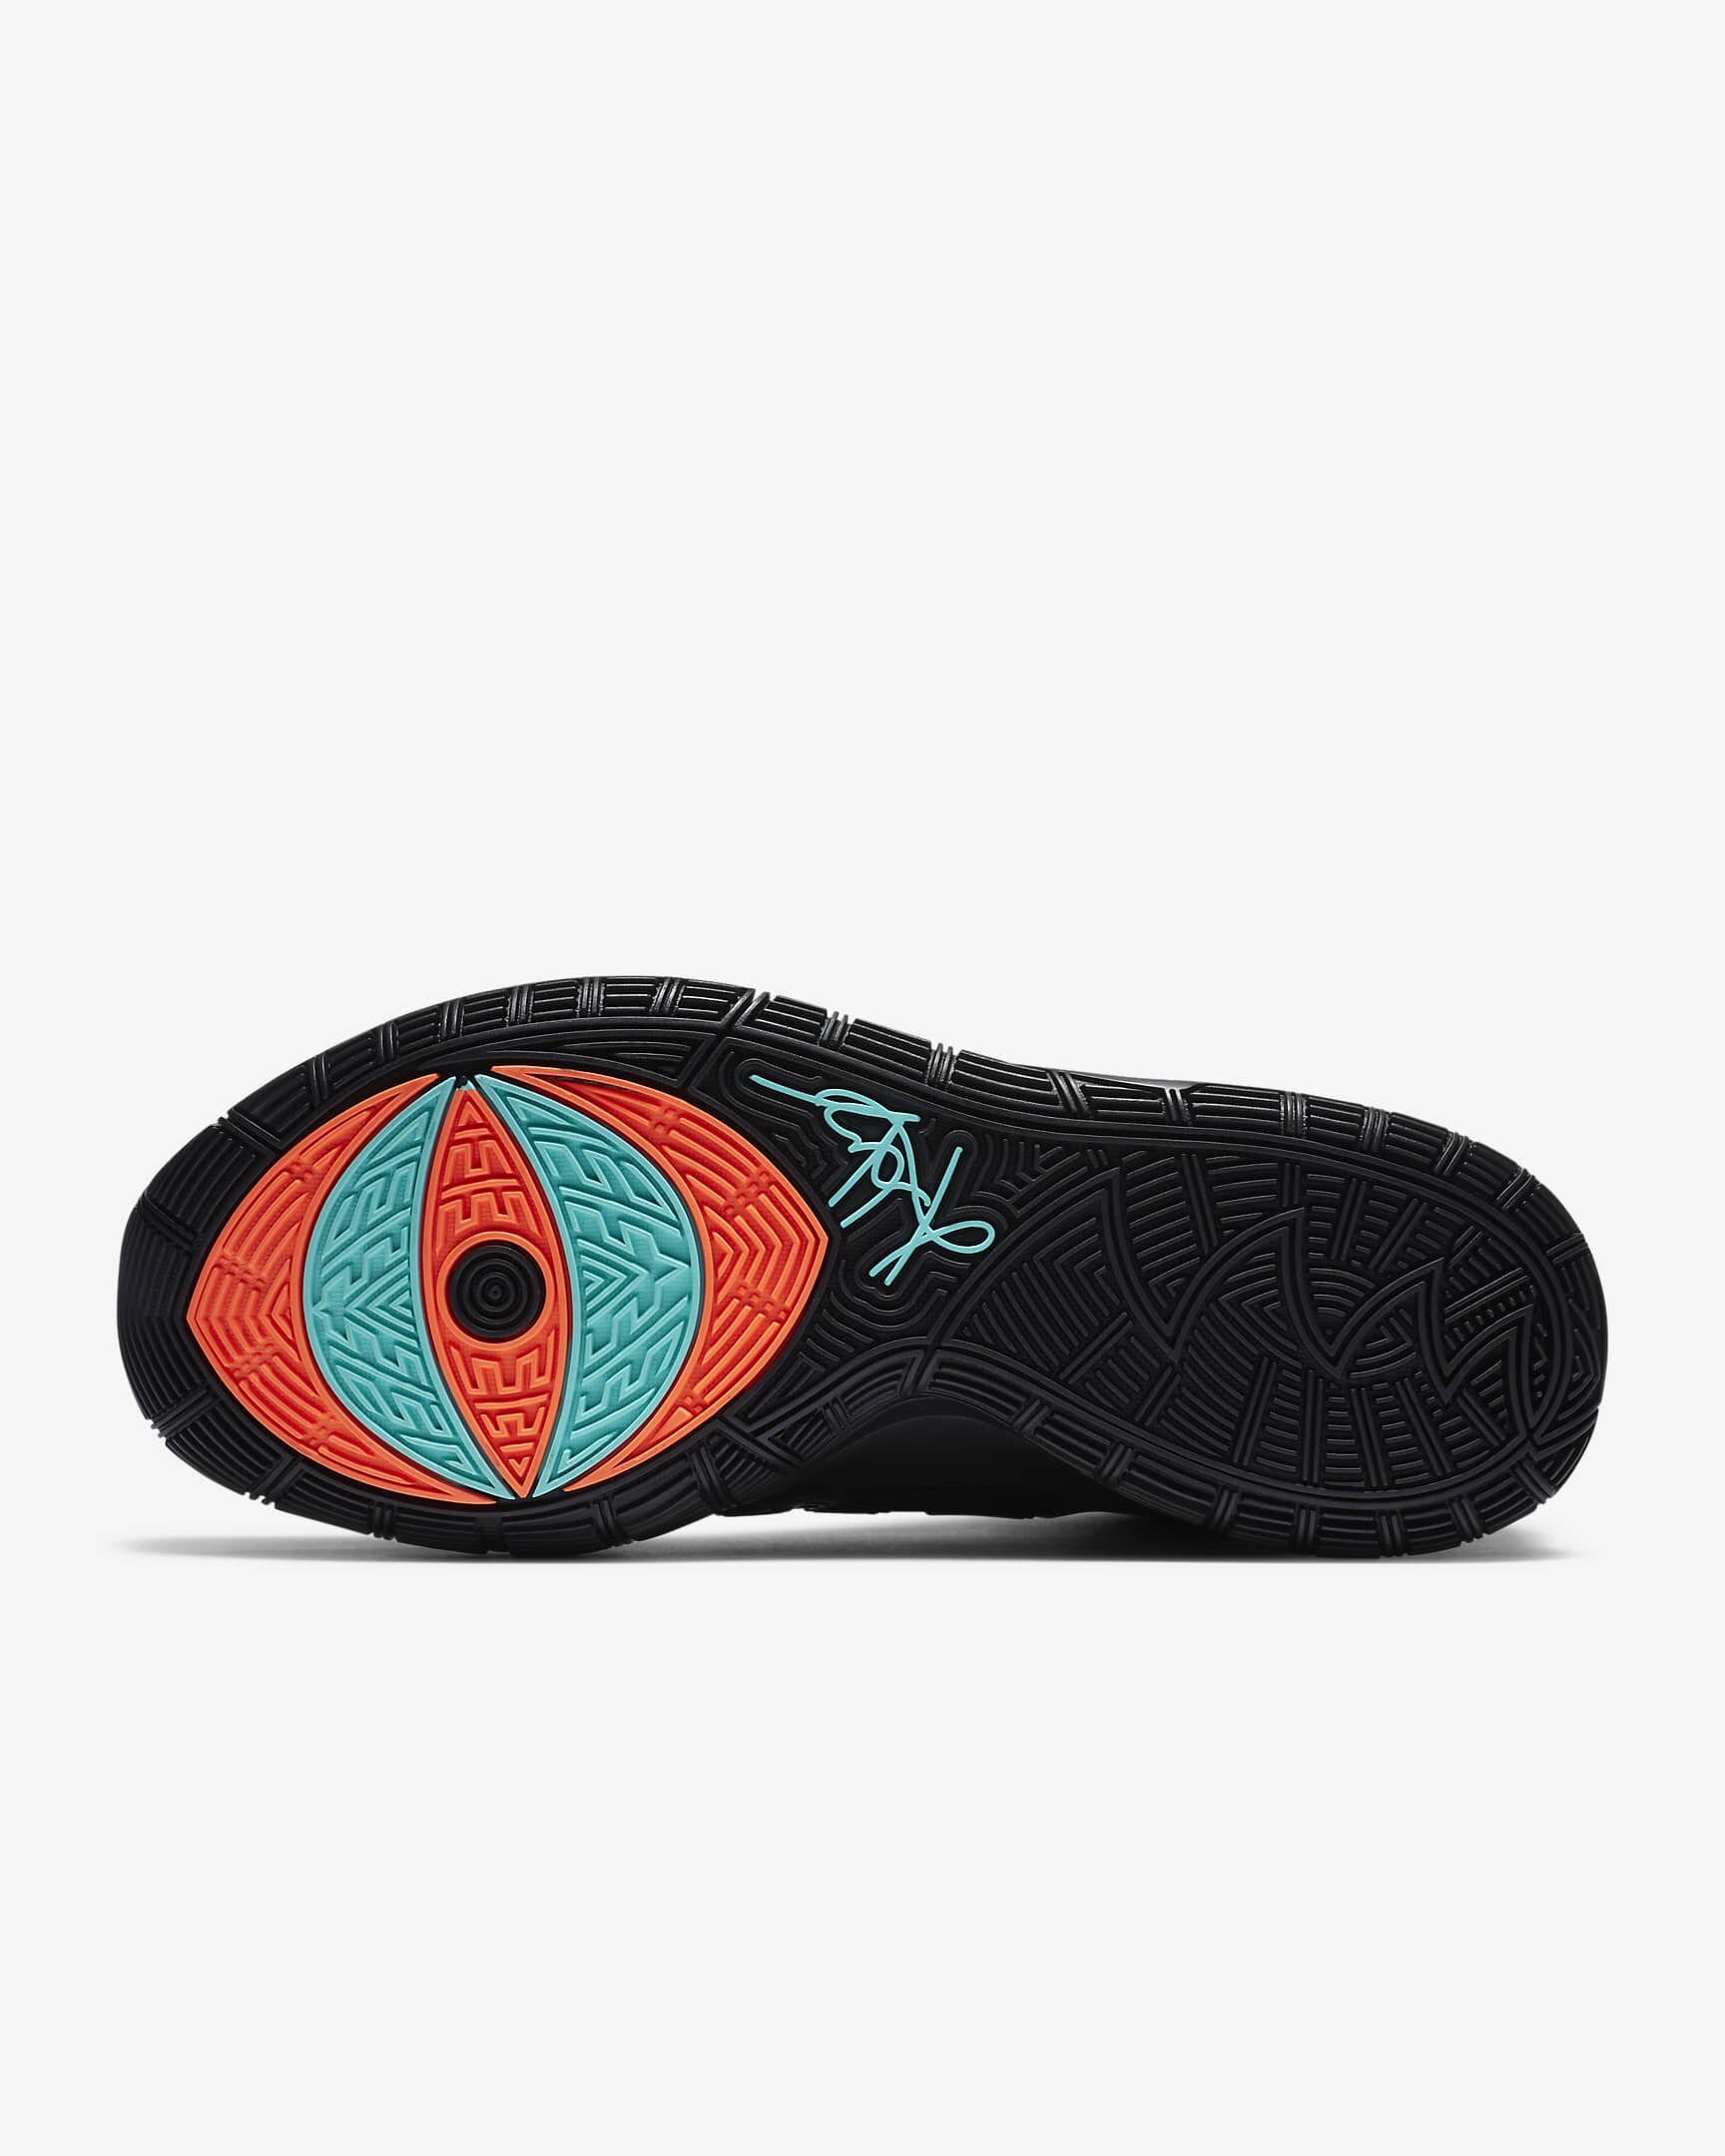 Nike Kyrie 6 Glow-in-the-Dark: Sneaker Release Info – Footwear News